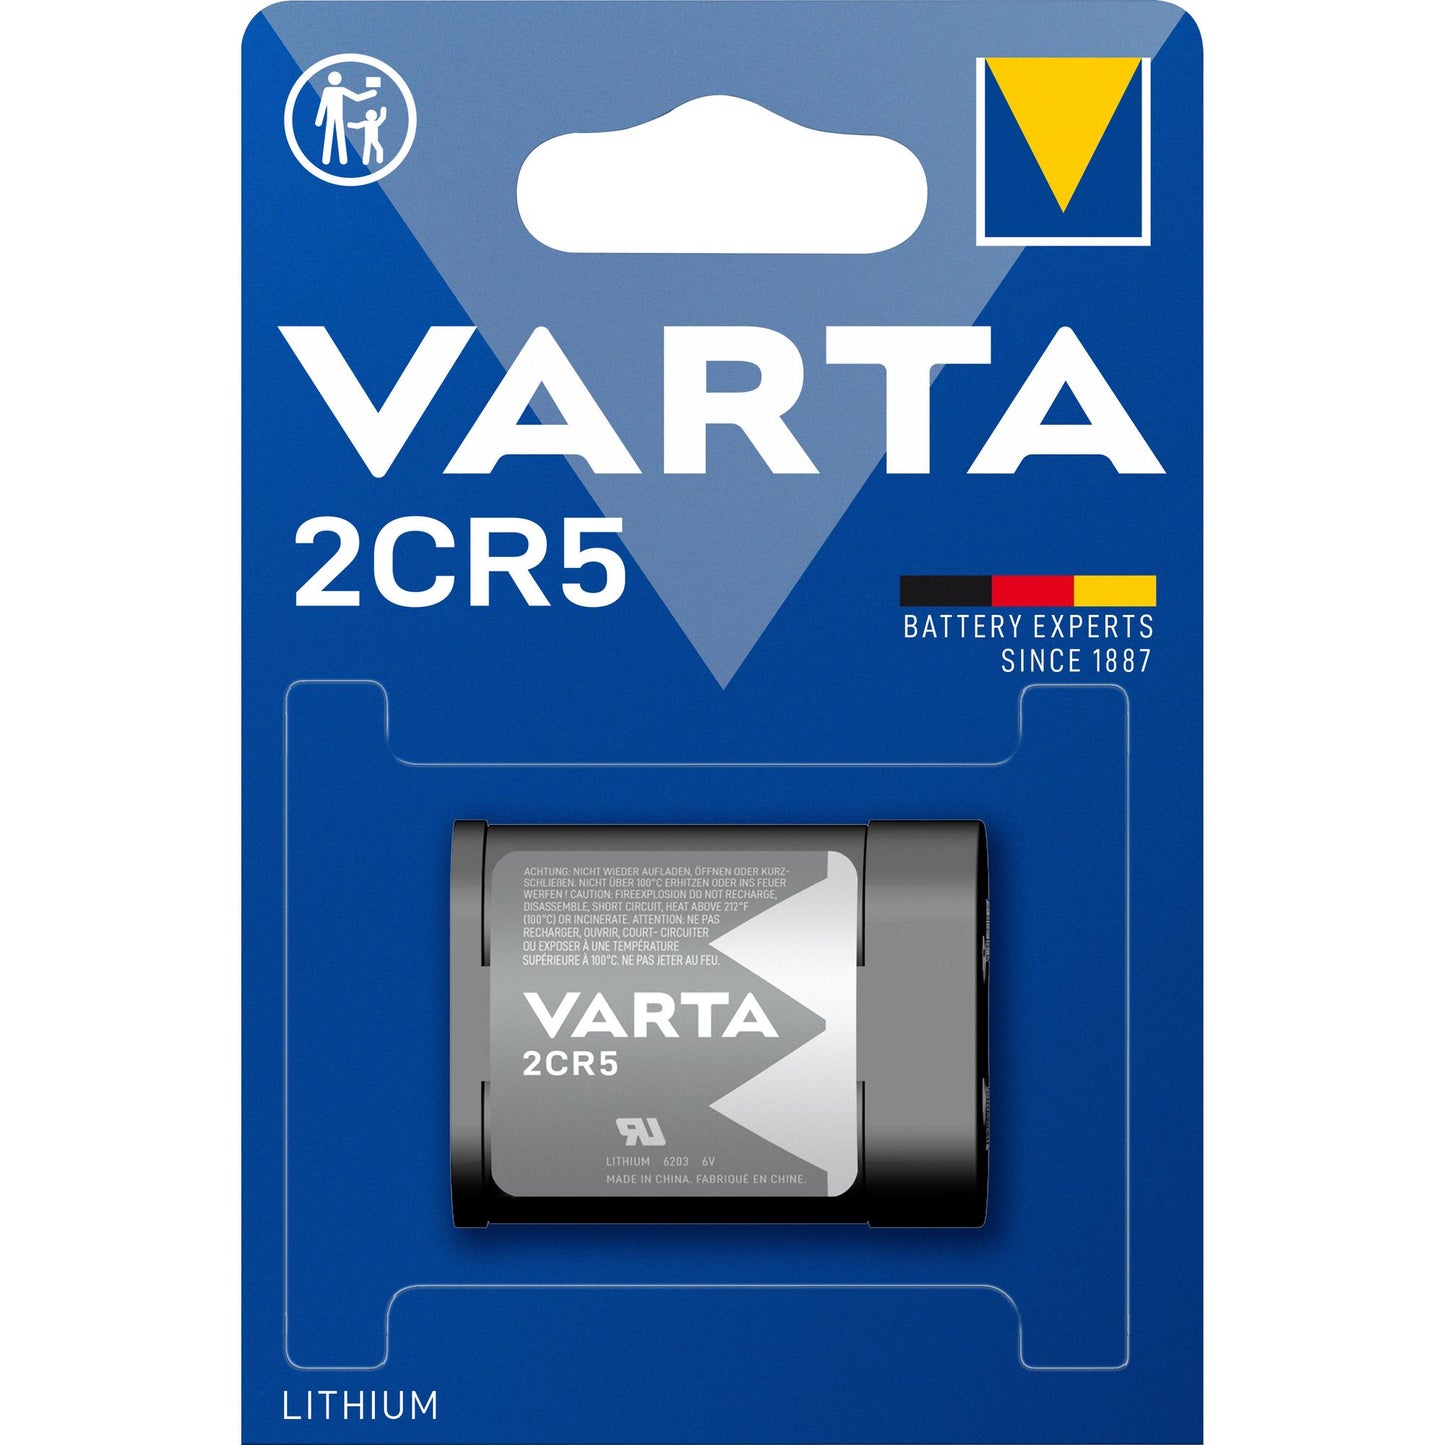 VARTA Batterie Lithium 2CR5, 6V Photo, Retail Blister (1-Pack)